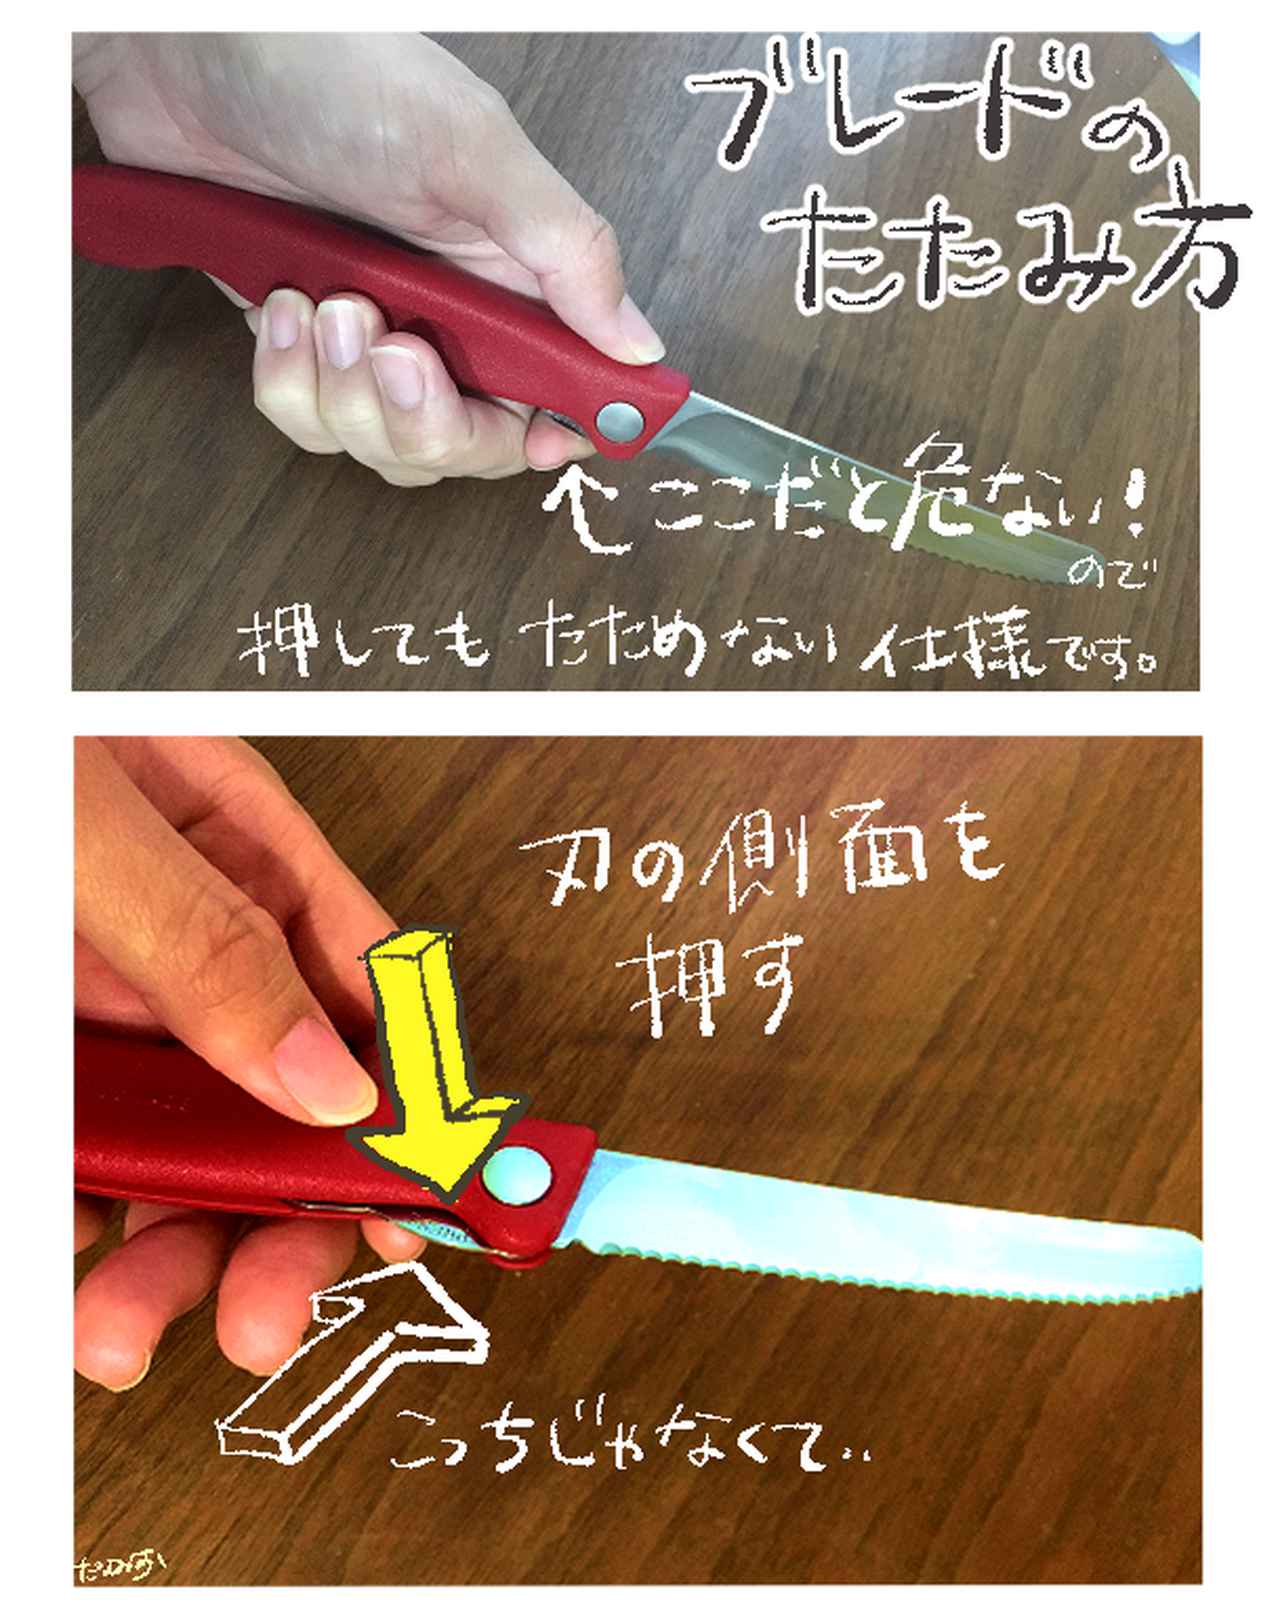 画像1: ビクトリノックス「トマト・ベジタブルフォールディングナイフ」の使い方